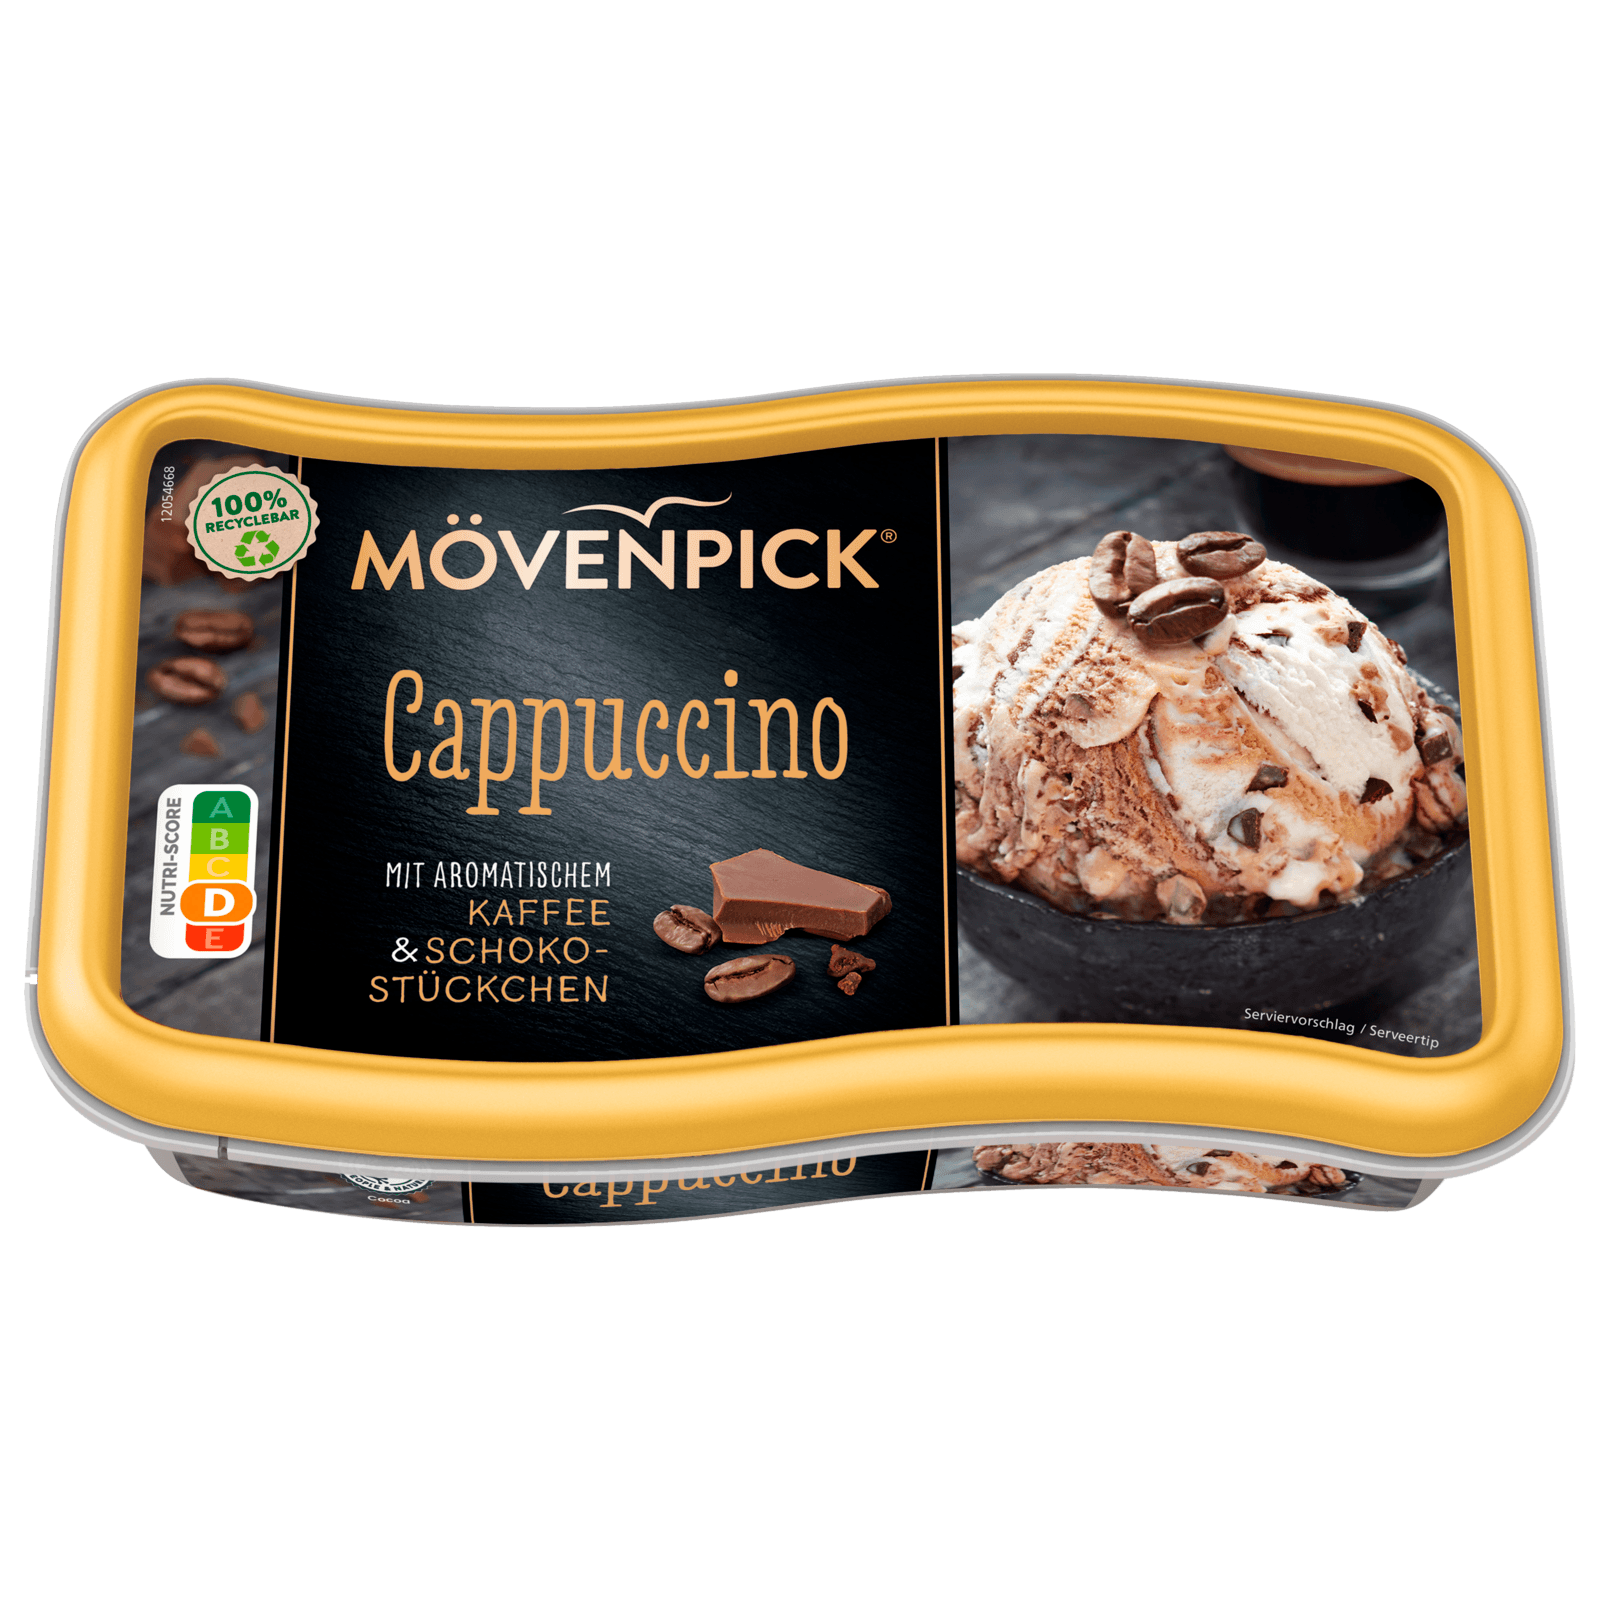 Mövenpick Eis Cappuccino 900ml bei REWE online bestellen!